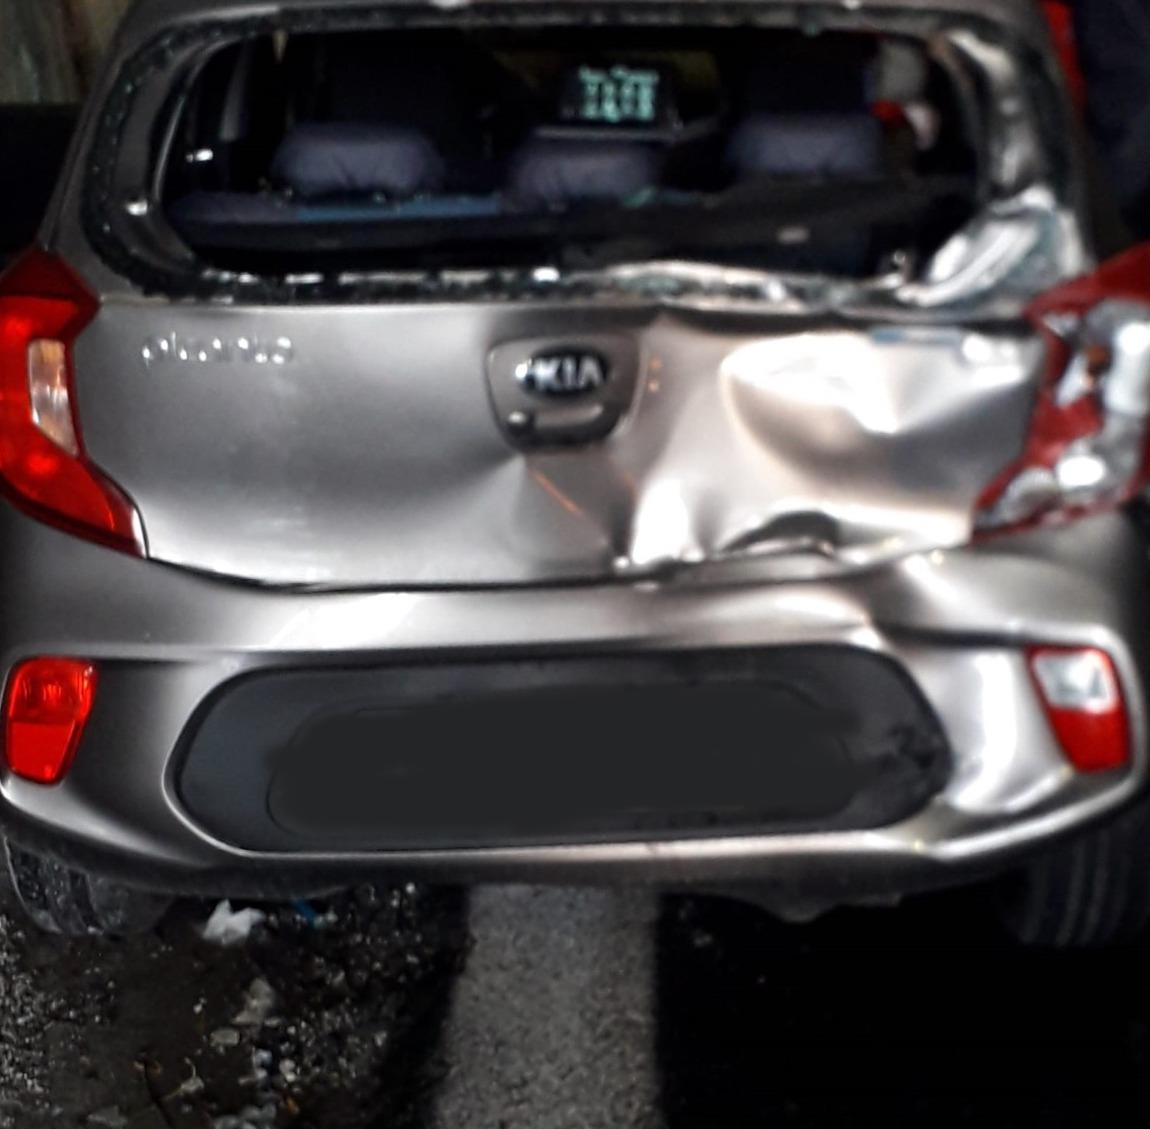 Incidente in autostrada tra Salerno e Baronissi: donna ferita, traffico in tilt